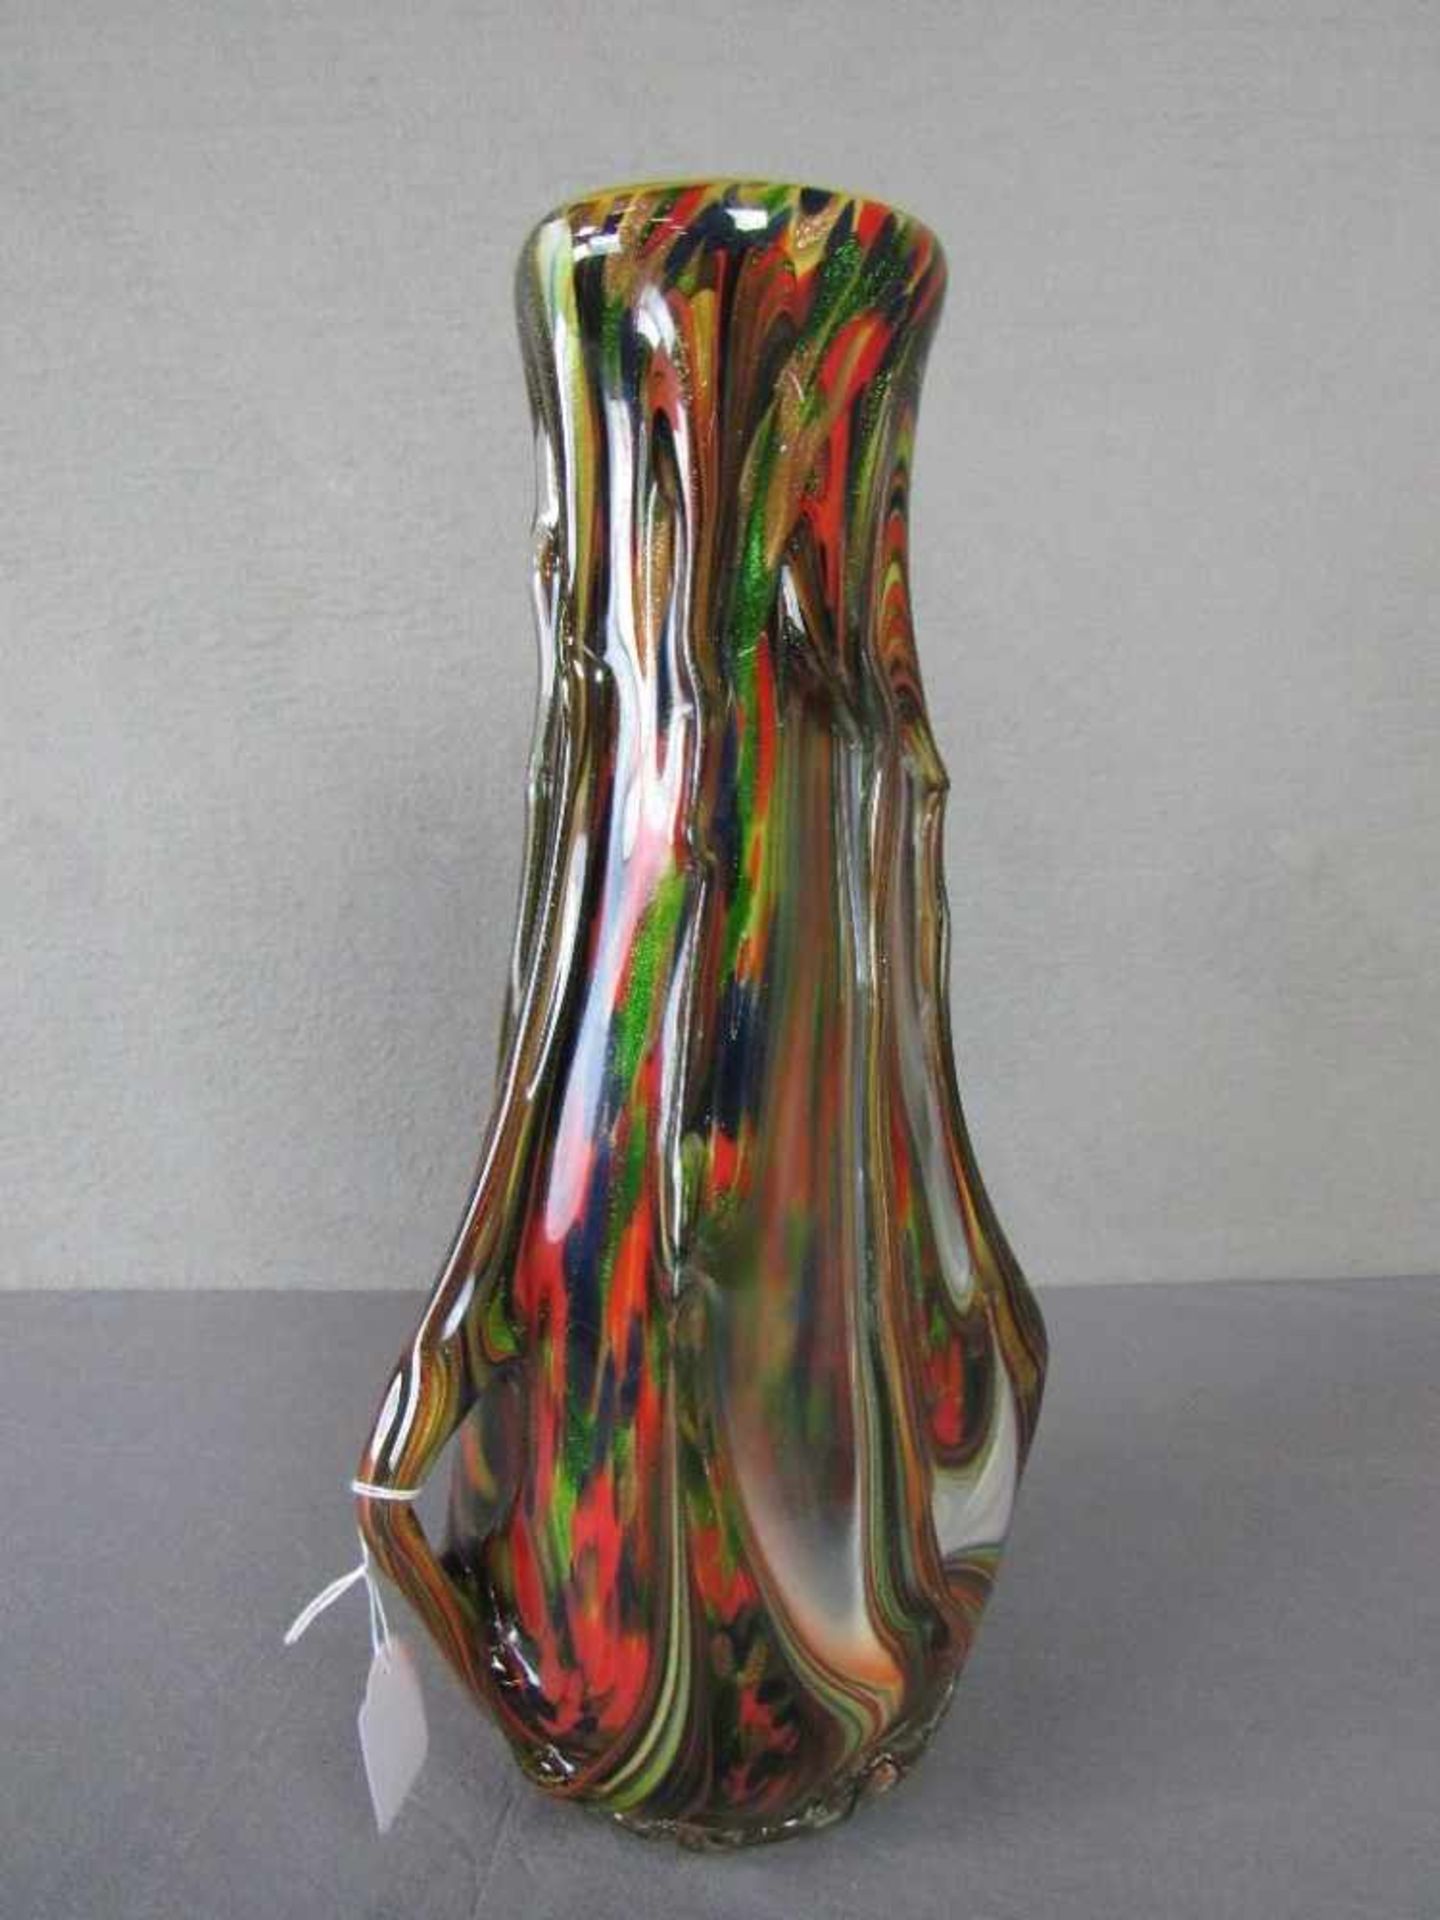 Designerglasvase farbenfroh verlaufend 46cm hoch- - -20.00 % buyer's premium on the hammer price19. - Bild 2 aus 3